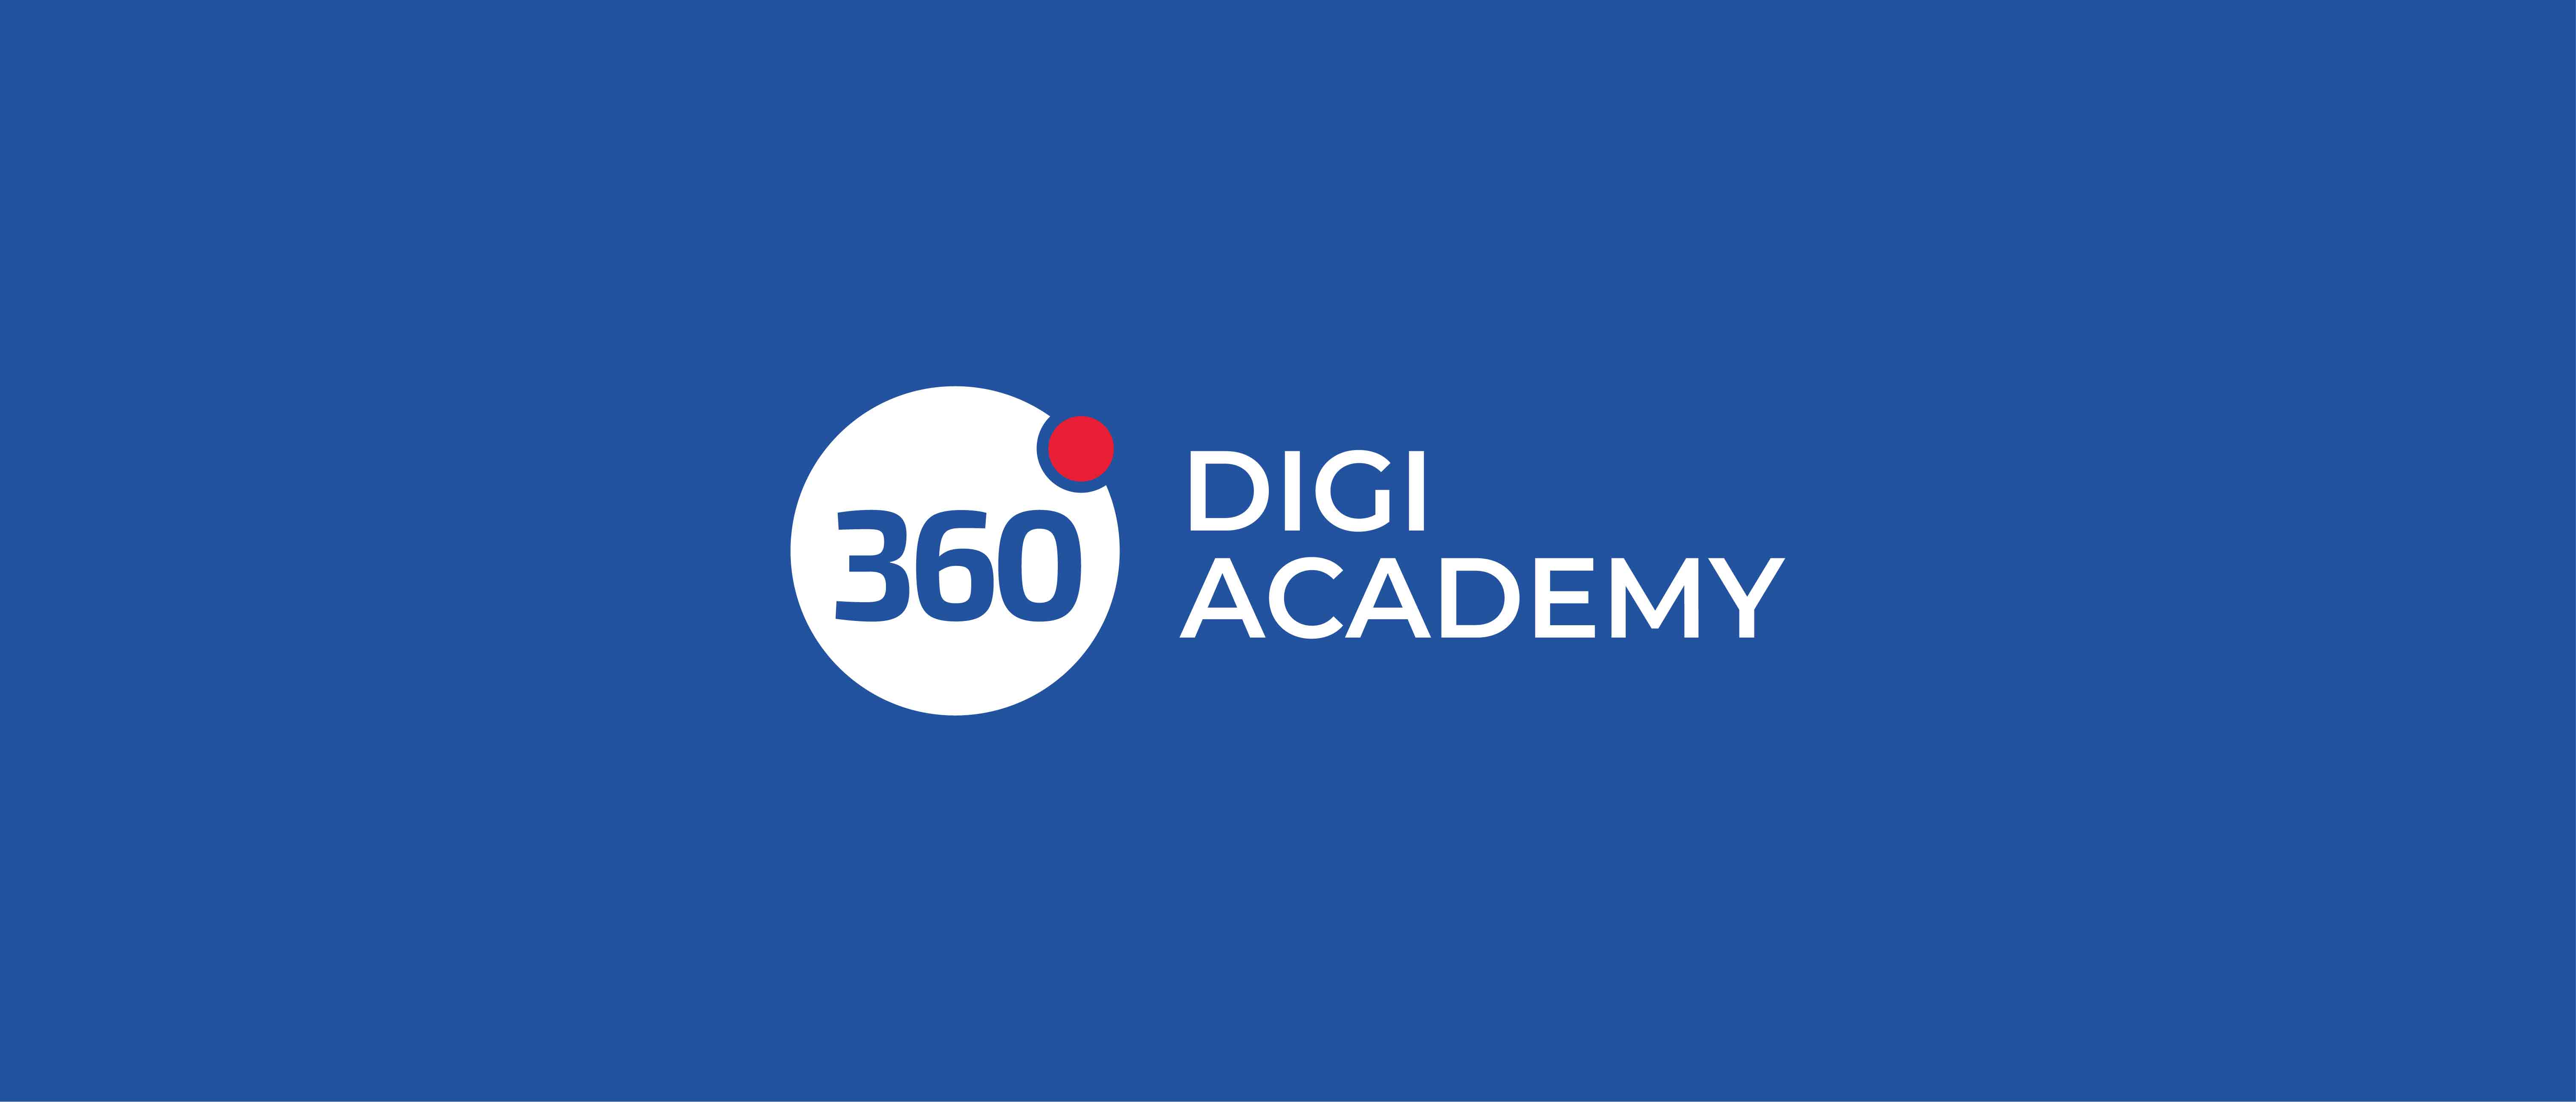 360 Digi Academy